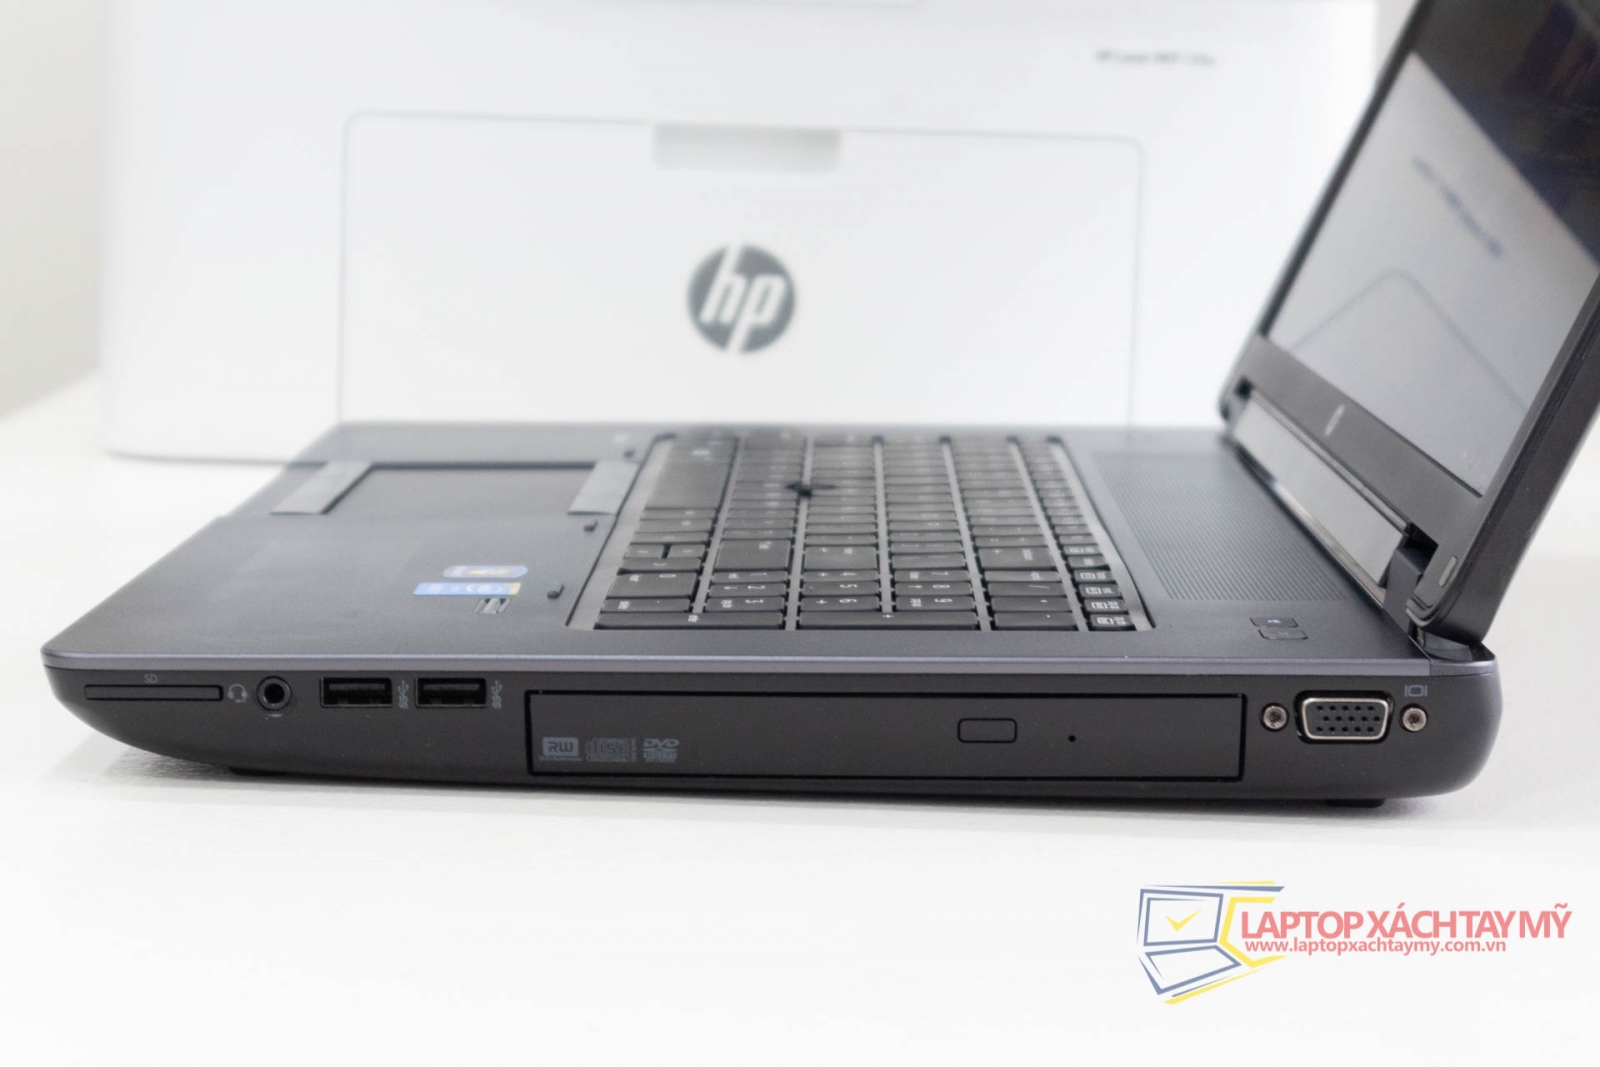 Laptop cũ tp HCM đồ họa chuyên nghiệp HP Zbook 17 G2 Core I7-4810MQ, Ram 8GB, SSD 256GB, K3100M, 17.3 In